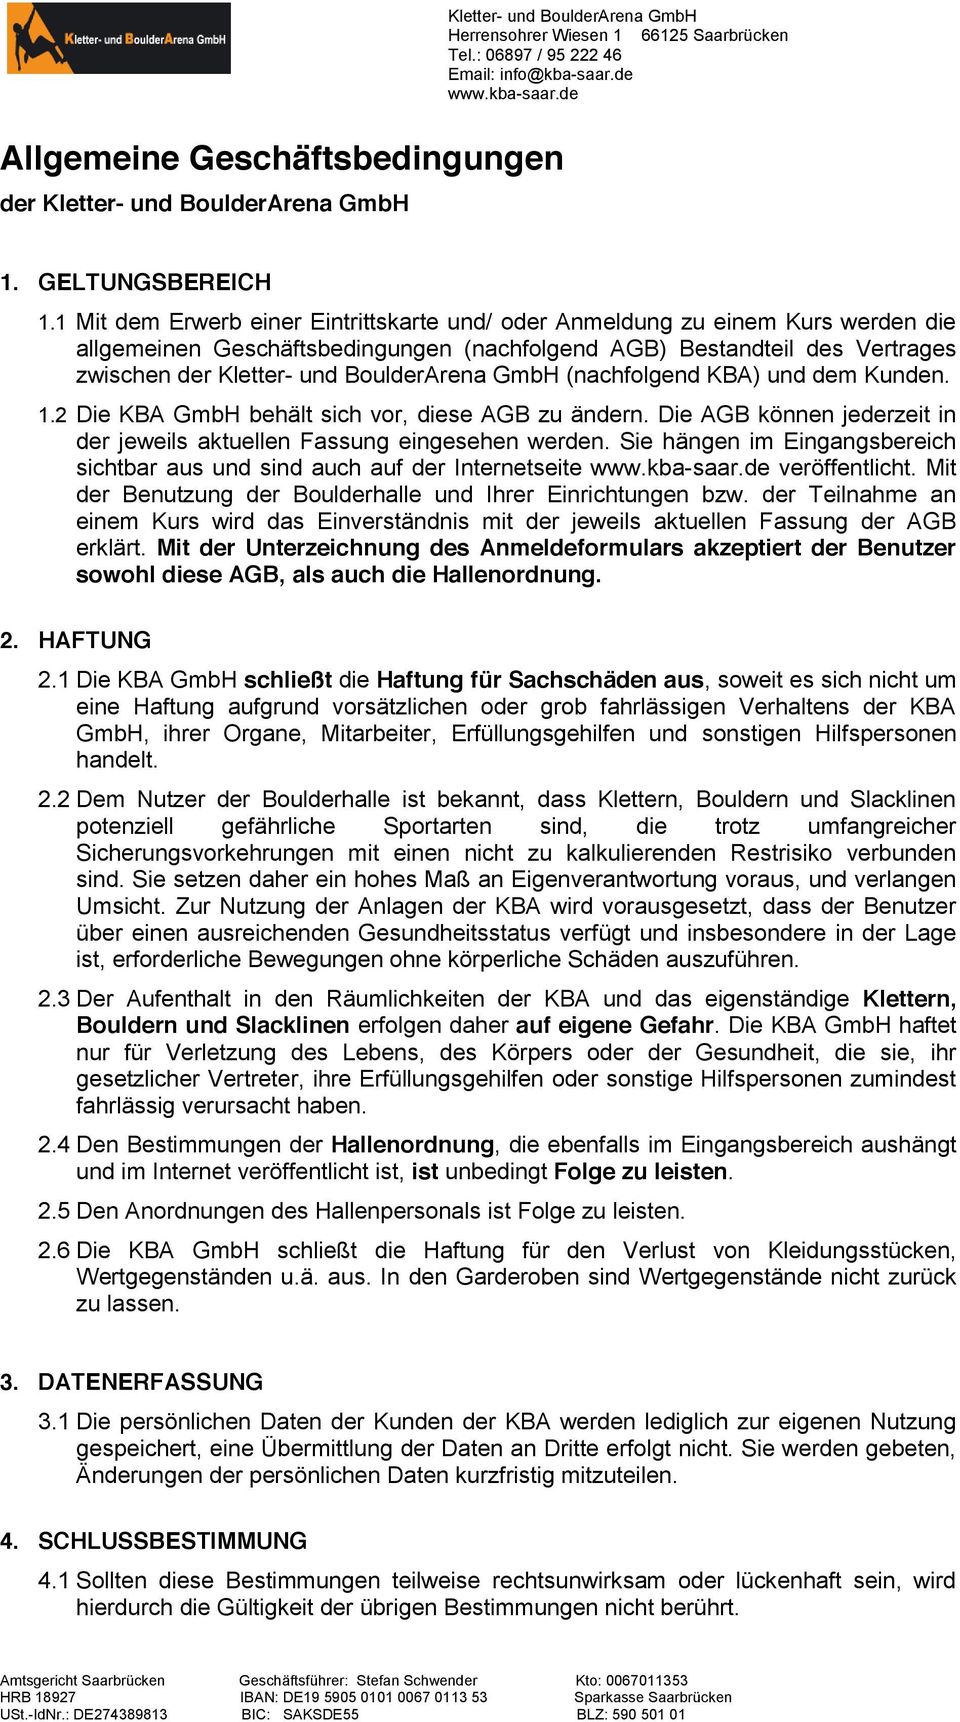 GmbH (nachfolgend KBA) und dem Kunden. 1.2 Die KBA GmbH behält sich vor, diese AGB zu ändern. Die AGB können jederzeit in der jeweils aktuellen Fassung eingesehen werden.